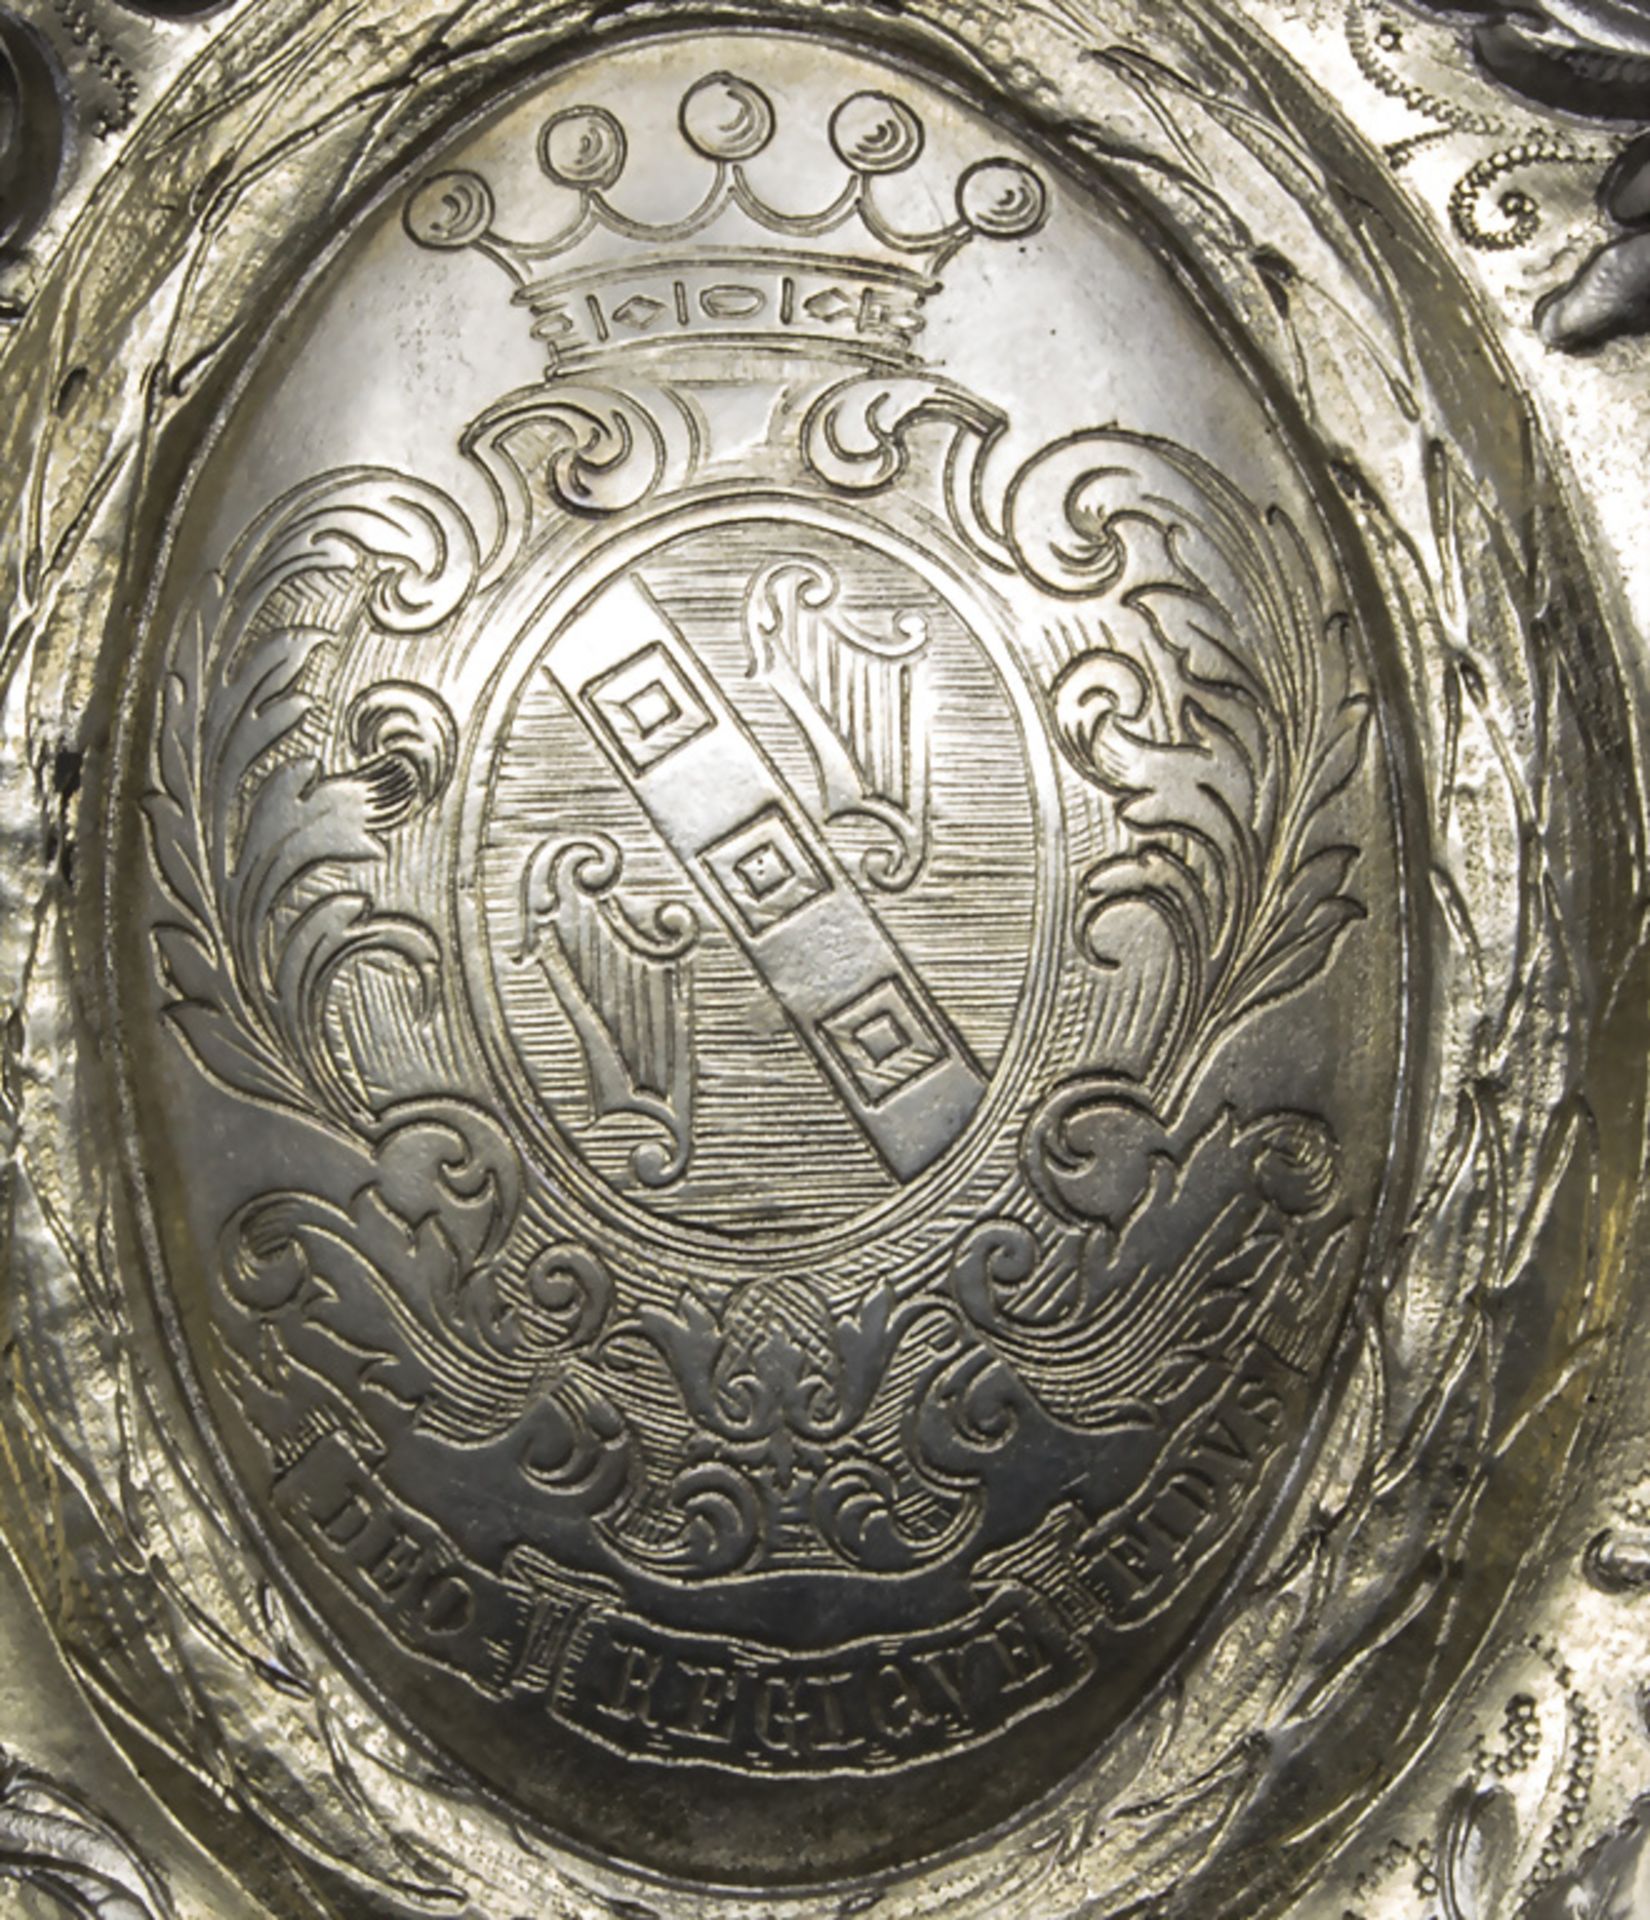 Barocke Weinbrandschale / A Baroque silver brandy tasting cup, J. Bossard, Luzern, nach 1775 - Bild 3 aus 7